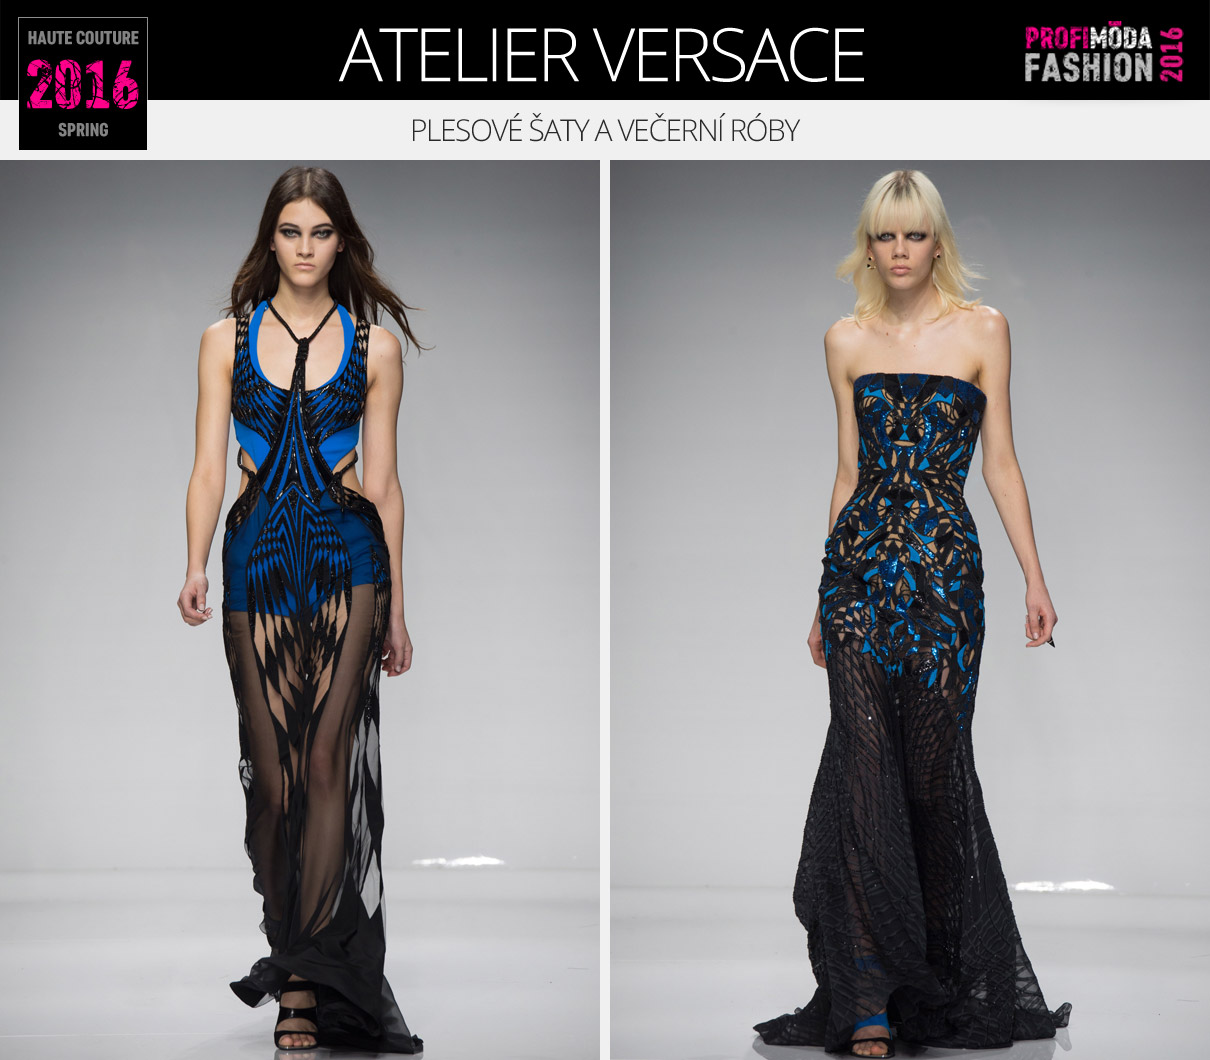 Plesové šaty a večerní róby podle Haute Couture Spring 2016 (Atelier Versace). 